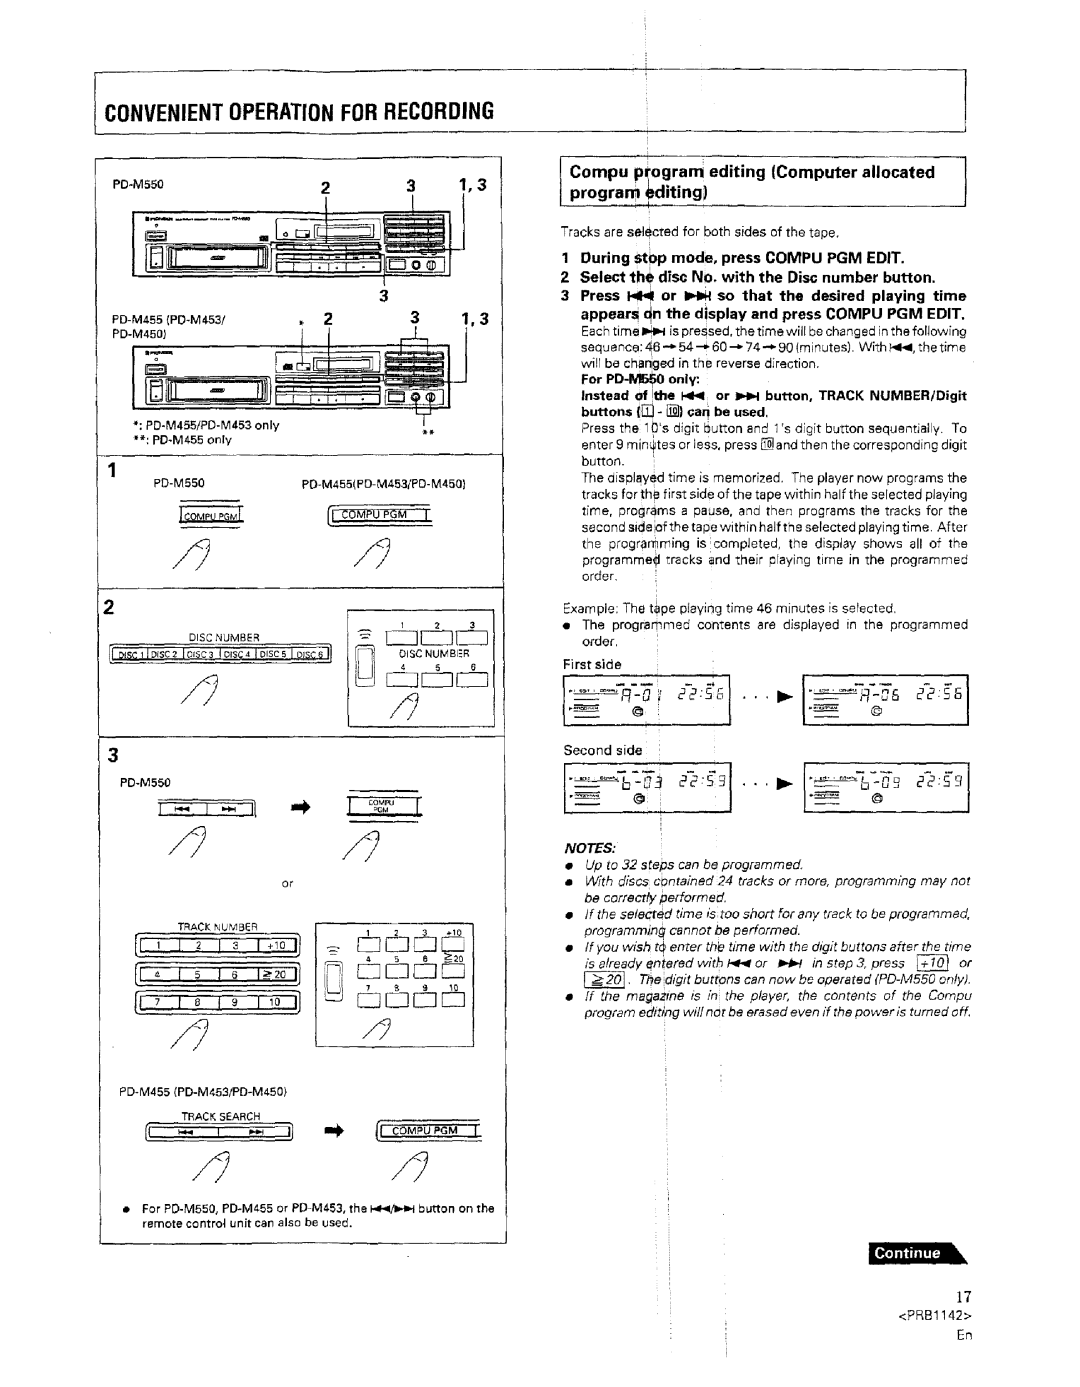 Pioneer PD-M455, PD-M550 warranty I Convenientoperationfor Recording, L C2 